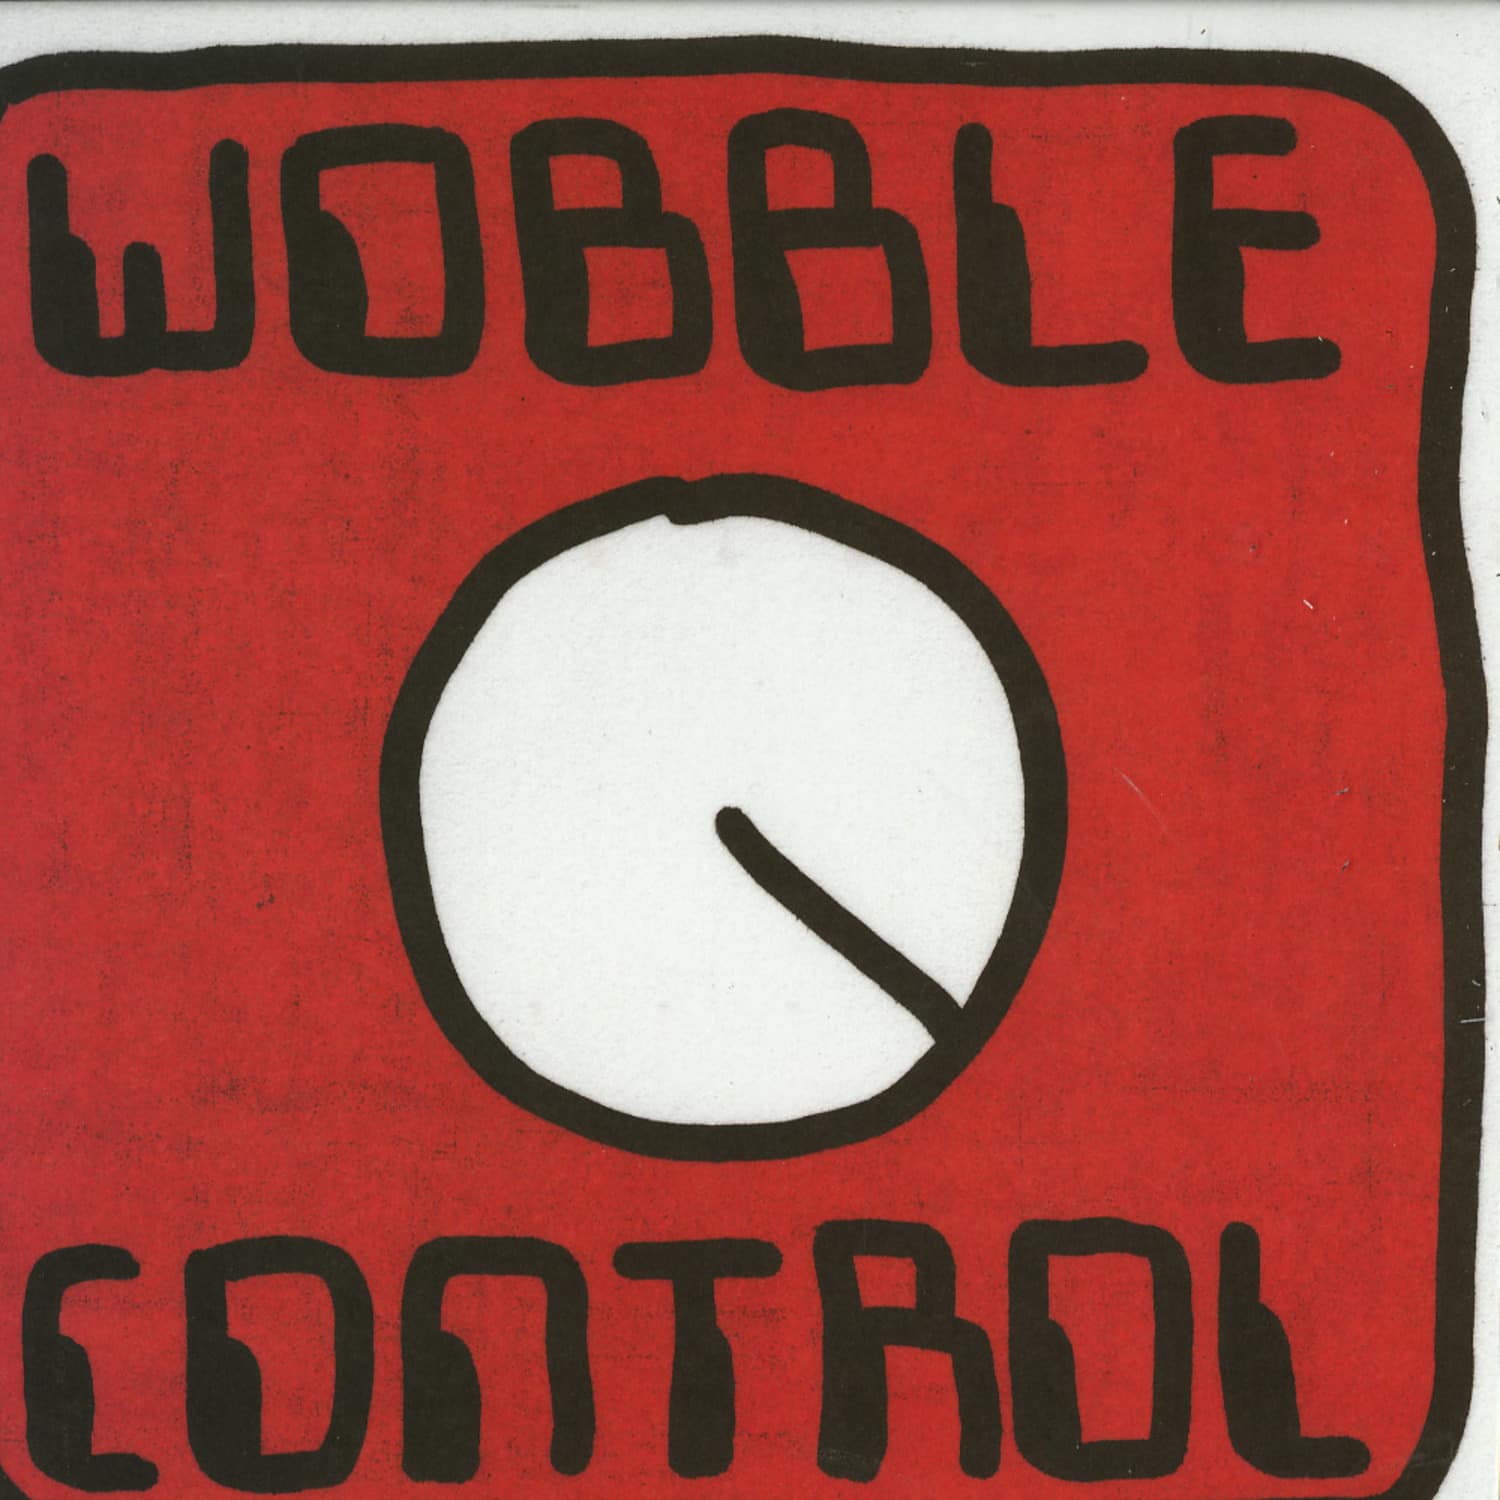 Mr Scruff - WOBBLE CONTROL 